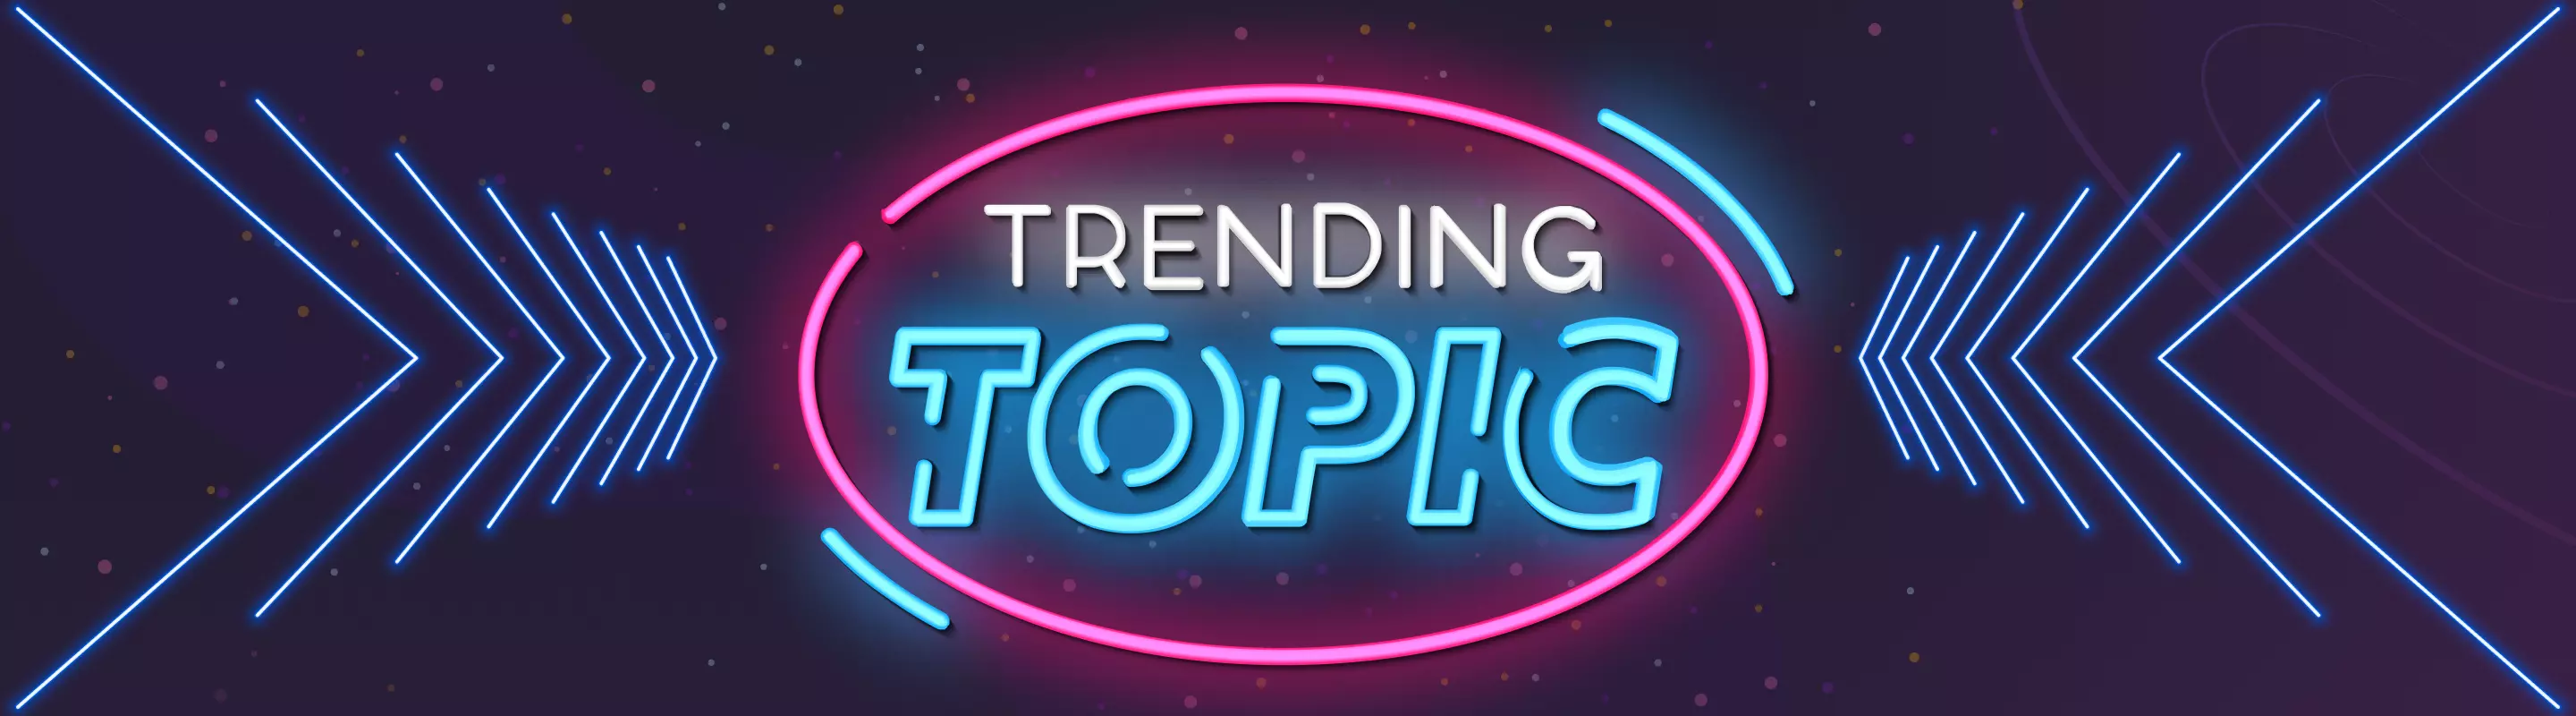 top trending topics